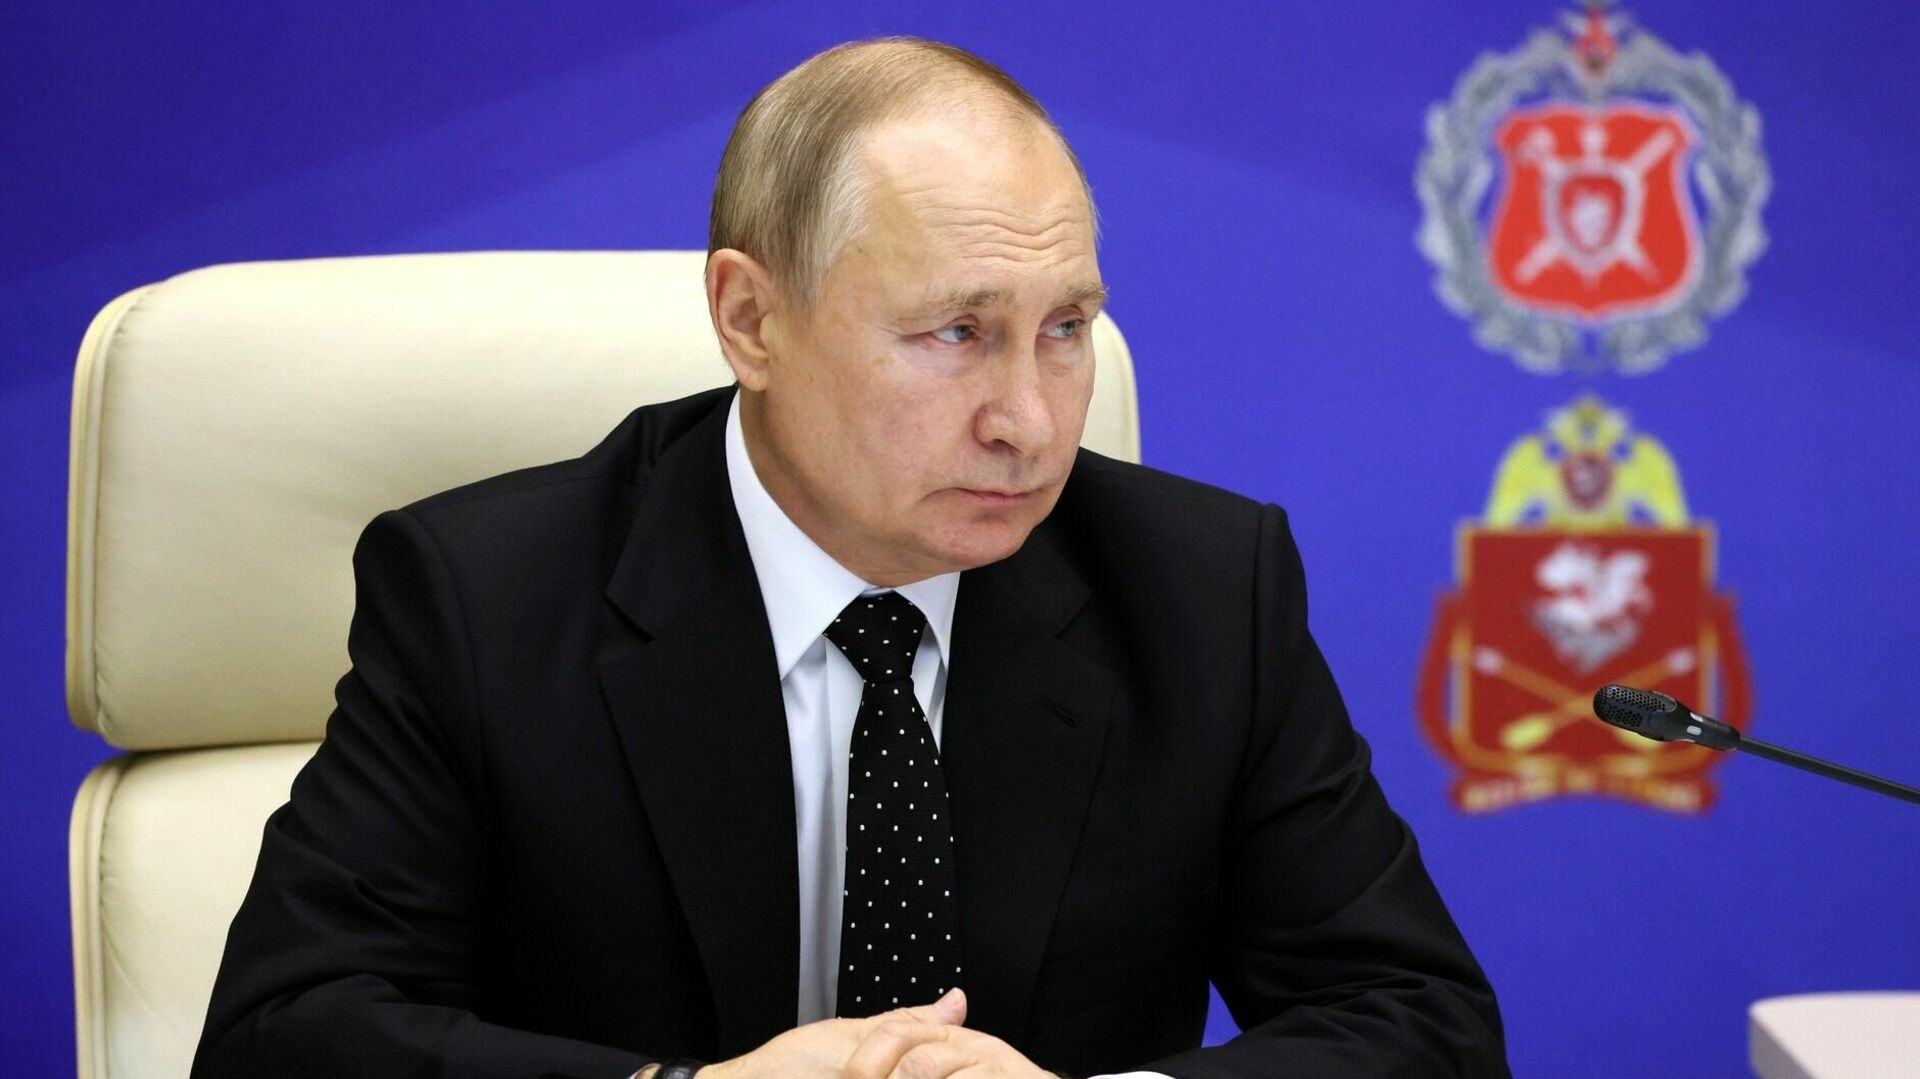 Путин криминализировал дискредитацию ЧВК «Вагнер» — Последние новости России и мира сегодня